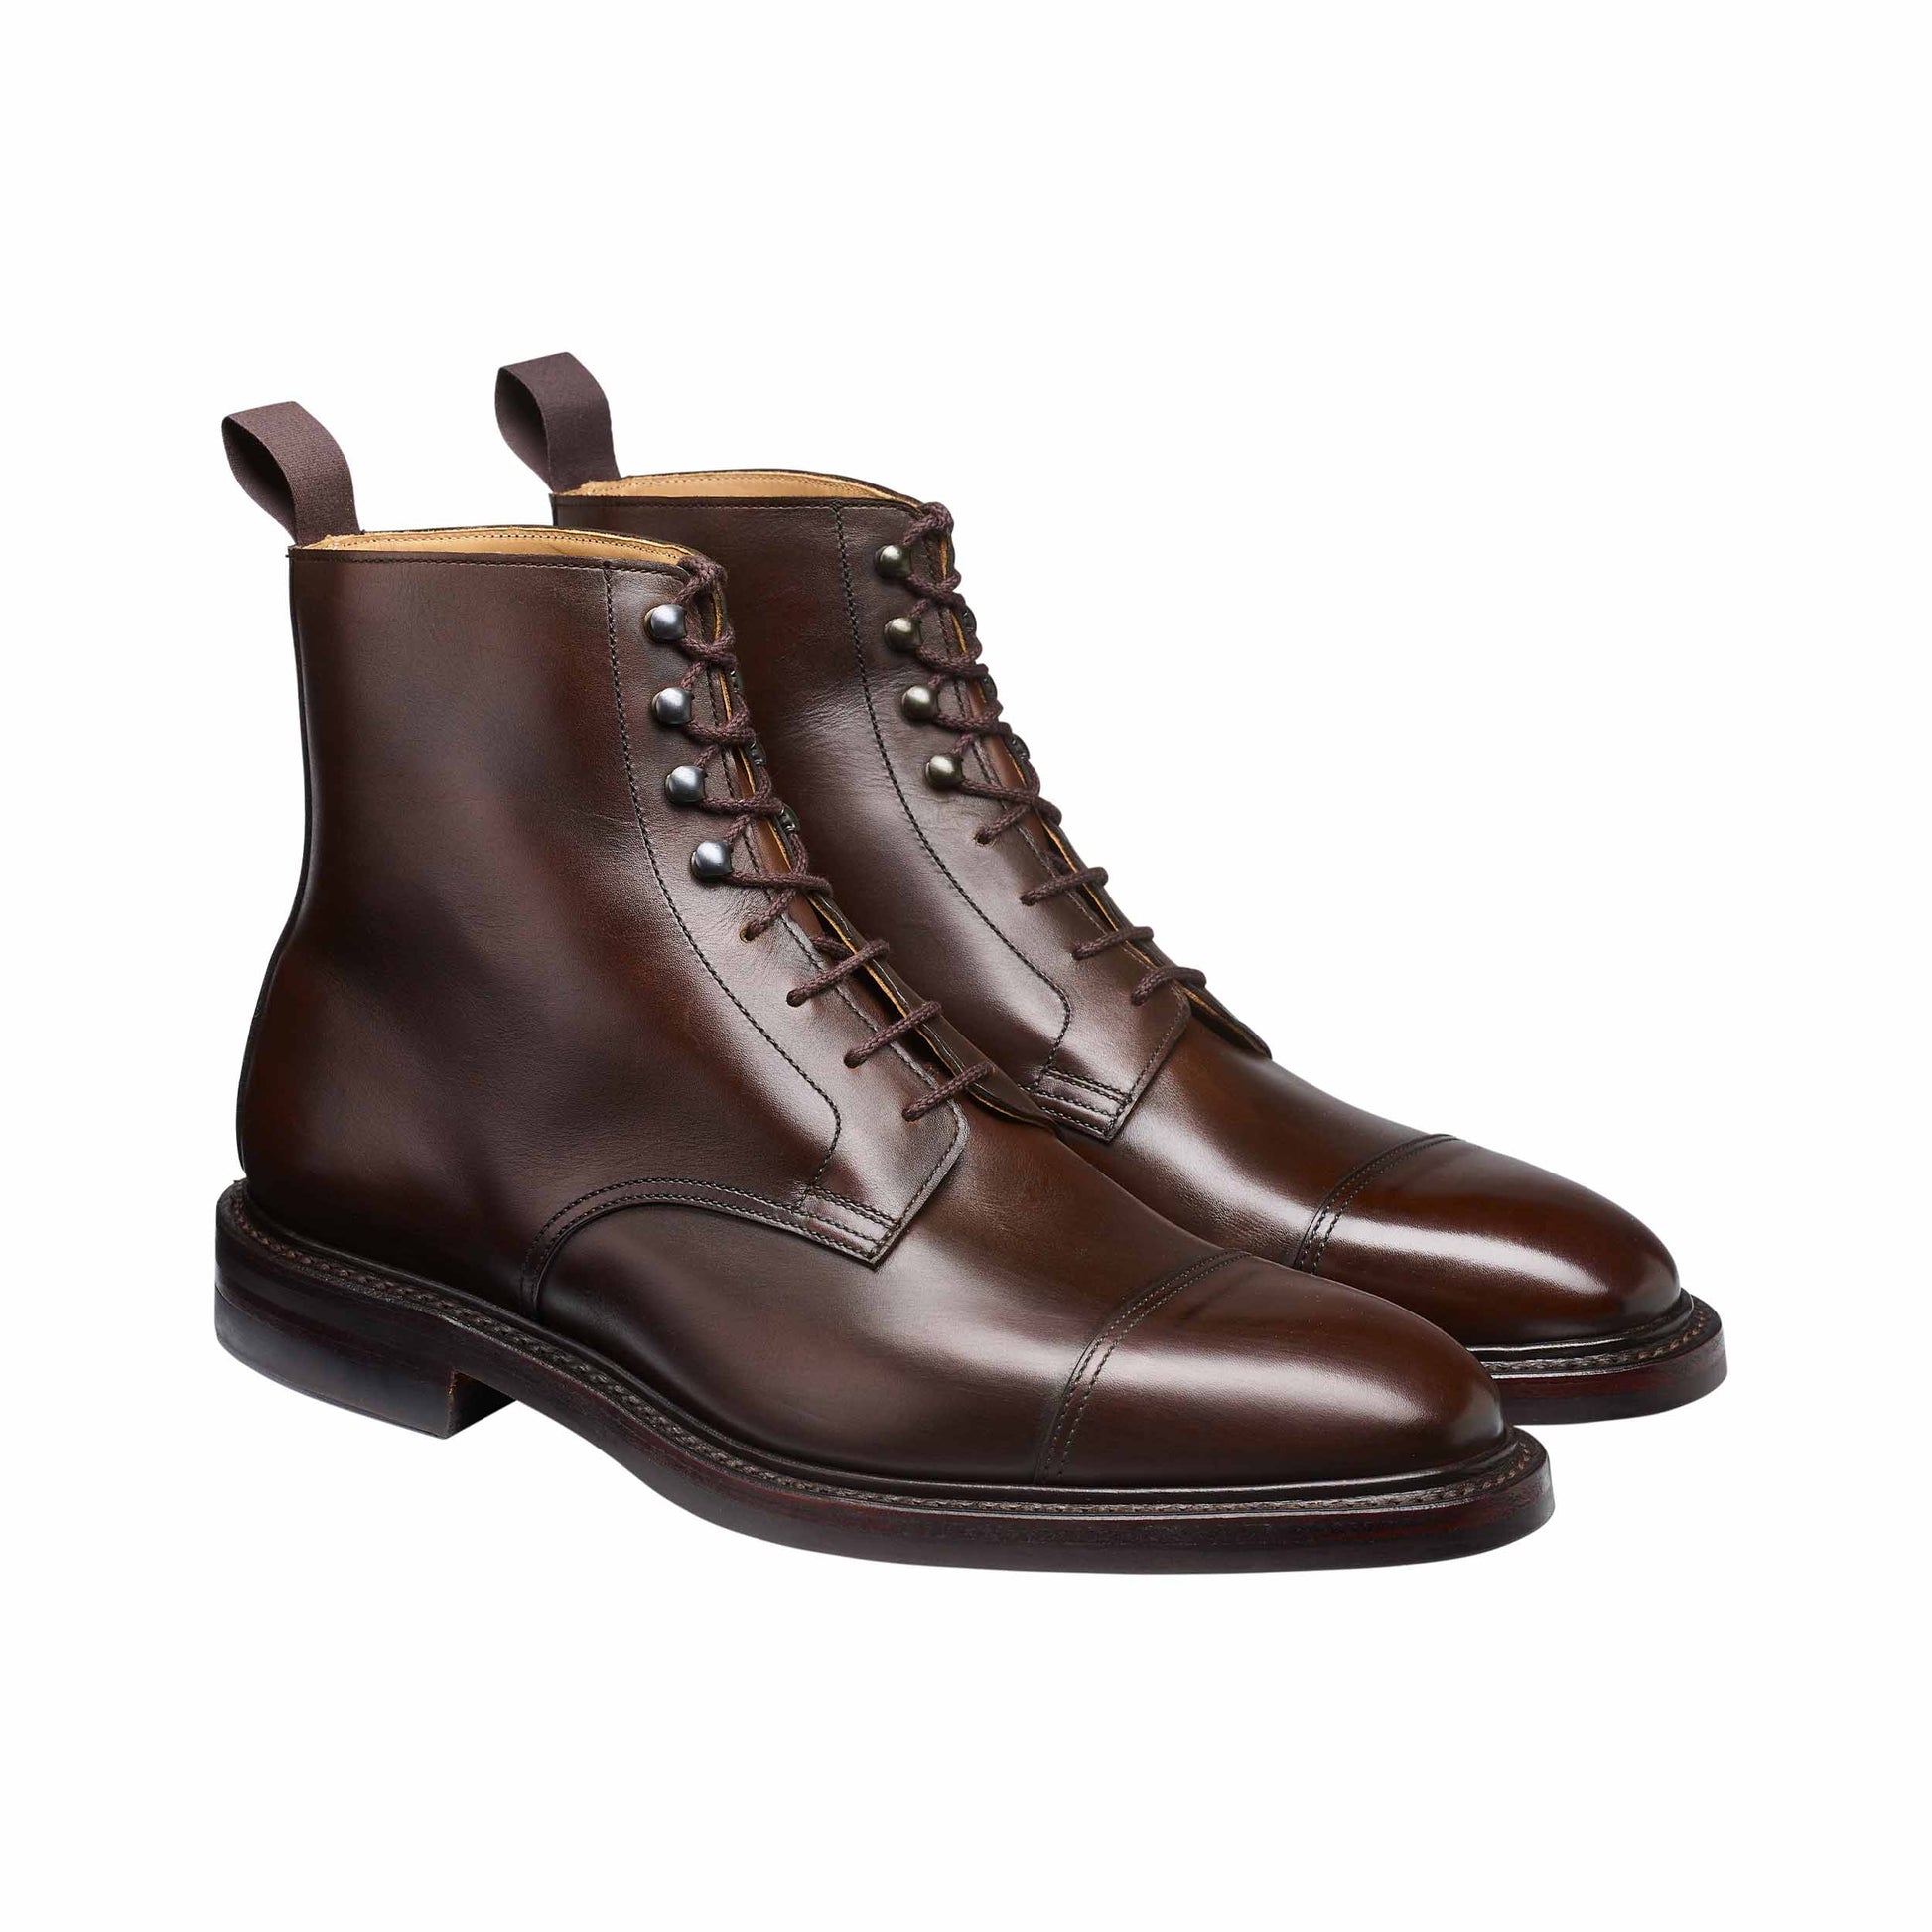 Argyll, Dark brown derby boots made in leather branded Crockett & Jones